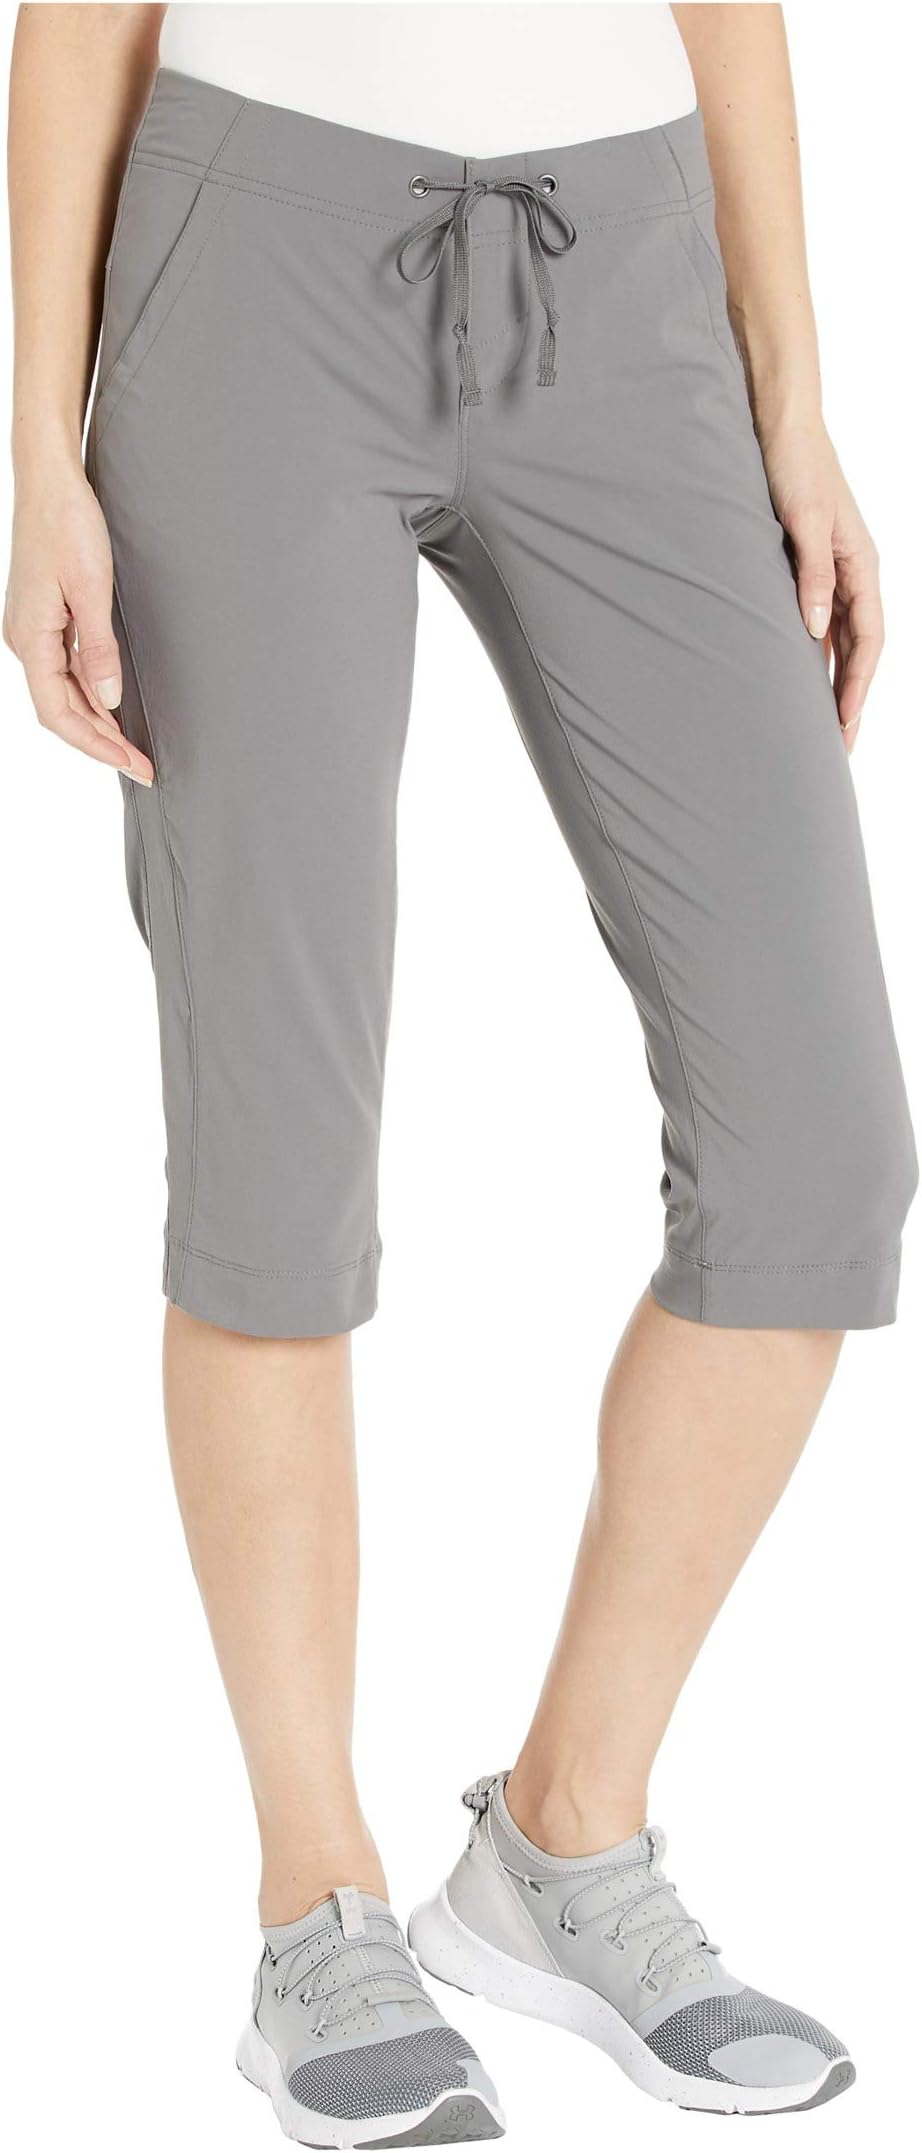 Брюки Anytime Outdoor Capri Columbia, цвет City Grey columbia брюки женские columbia anytime outdoor размер 40 42